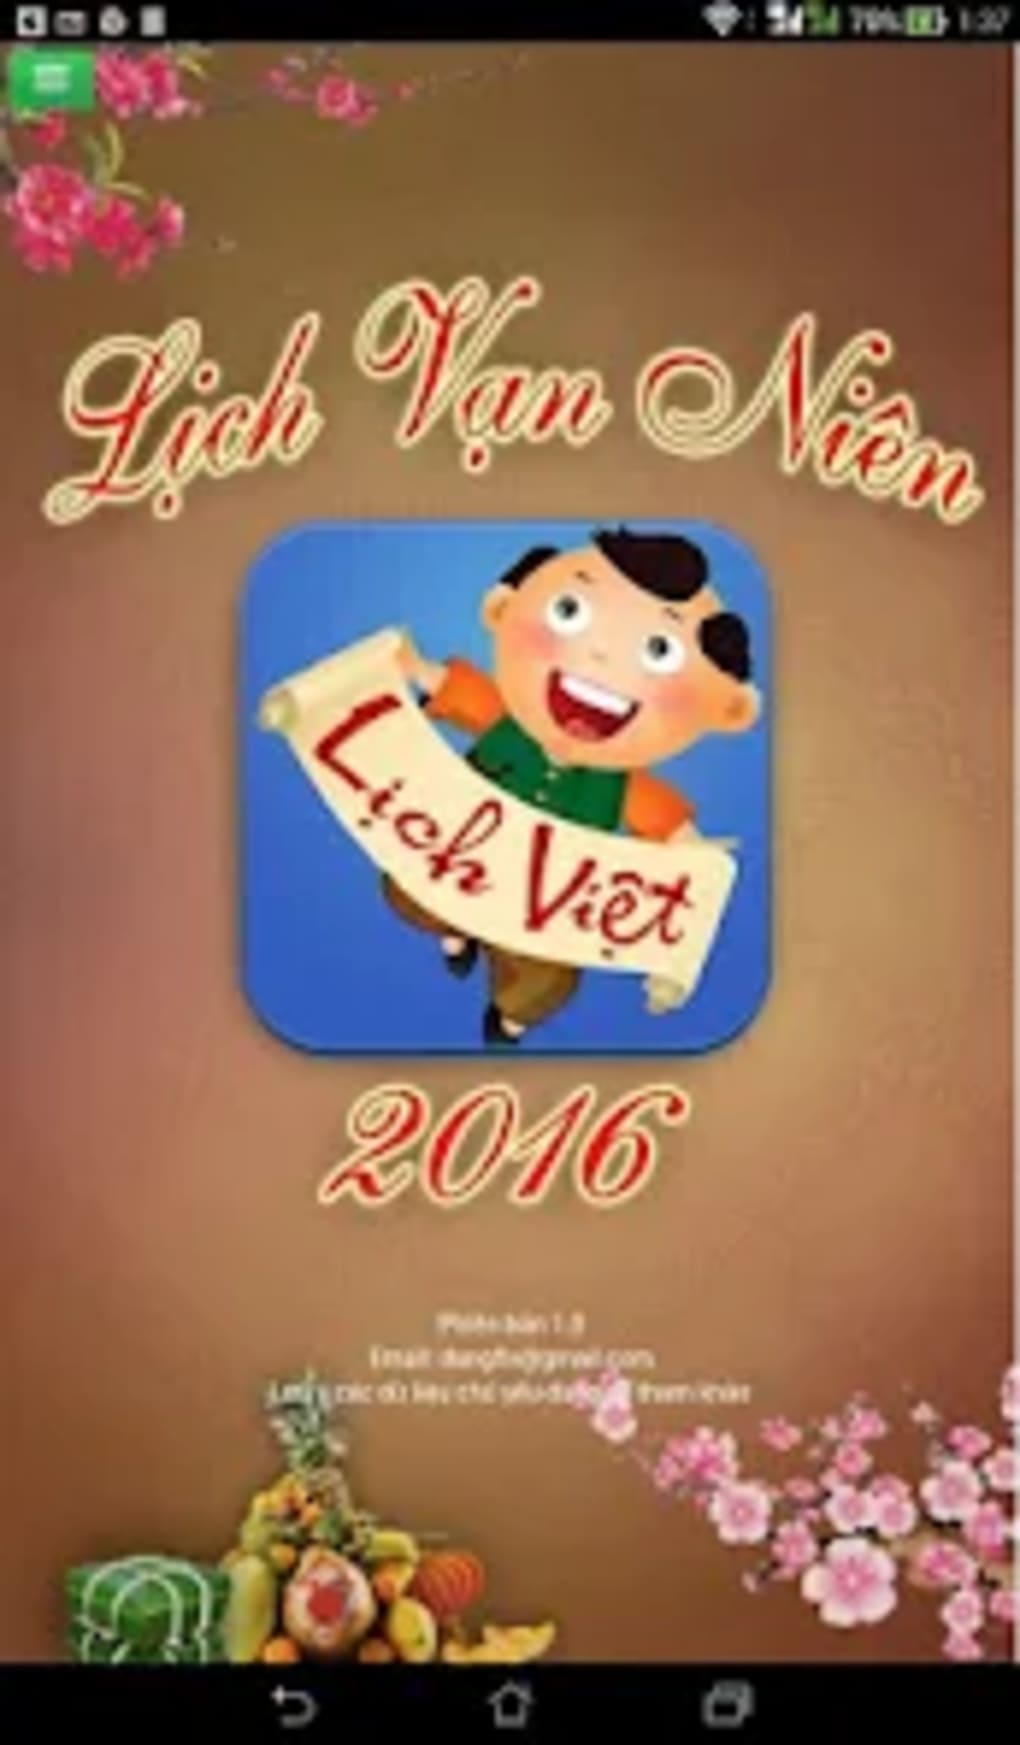 Lich Van Nien 2016 Lich Viet For Android Download